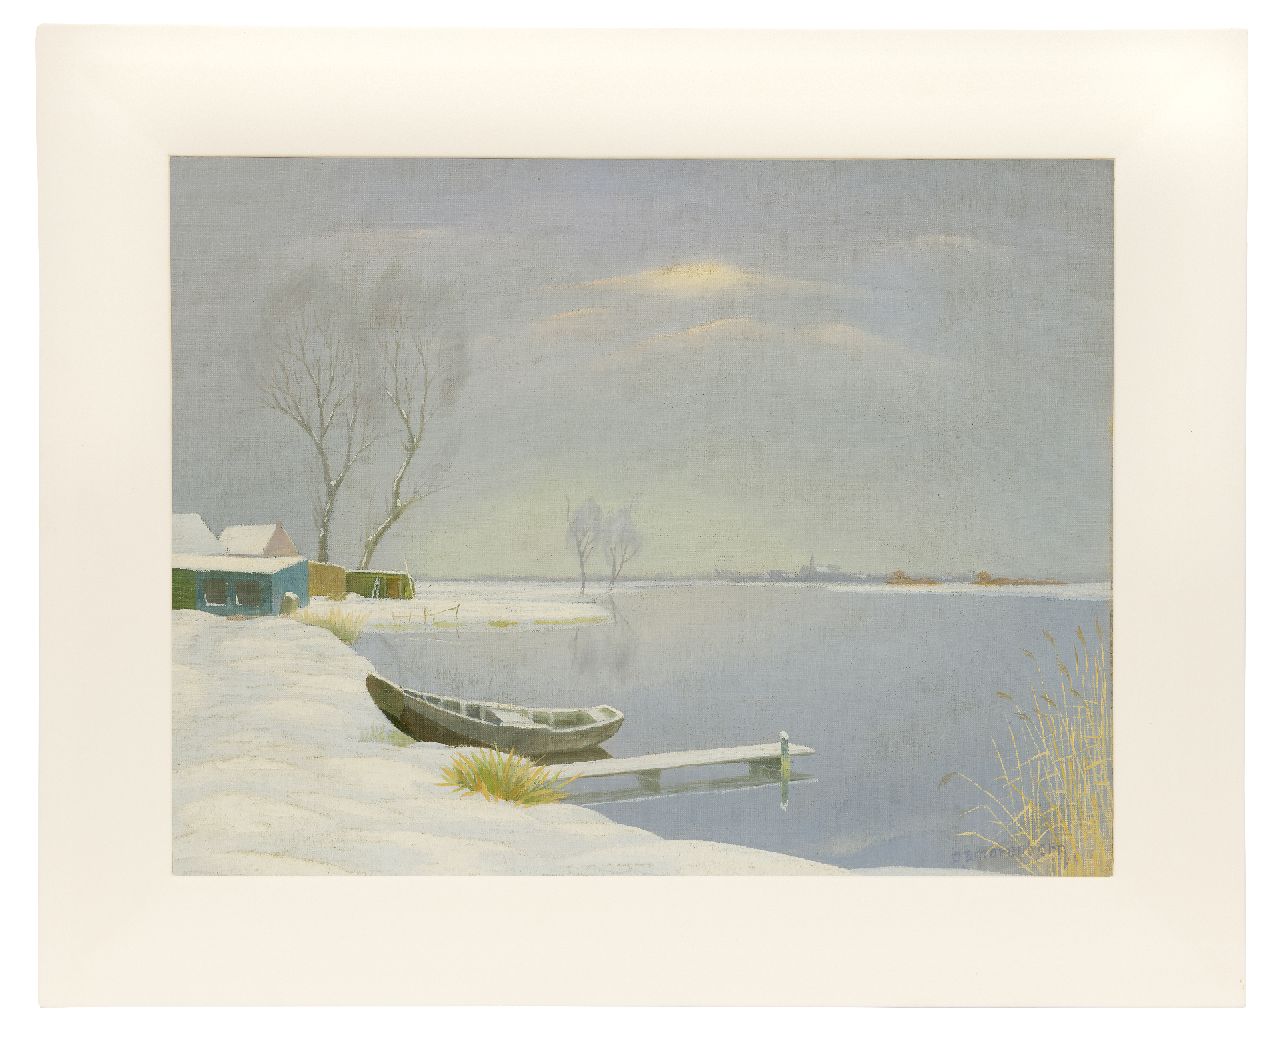 Smorenberg D.  | Dirk Smorenberg | Schilderijen te koop aangeboden | De Loosdrechtse Plassen in de winter, olieverf op doek 41,3 x 53,4 cm, gesigneerd rechtsonder